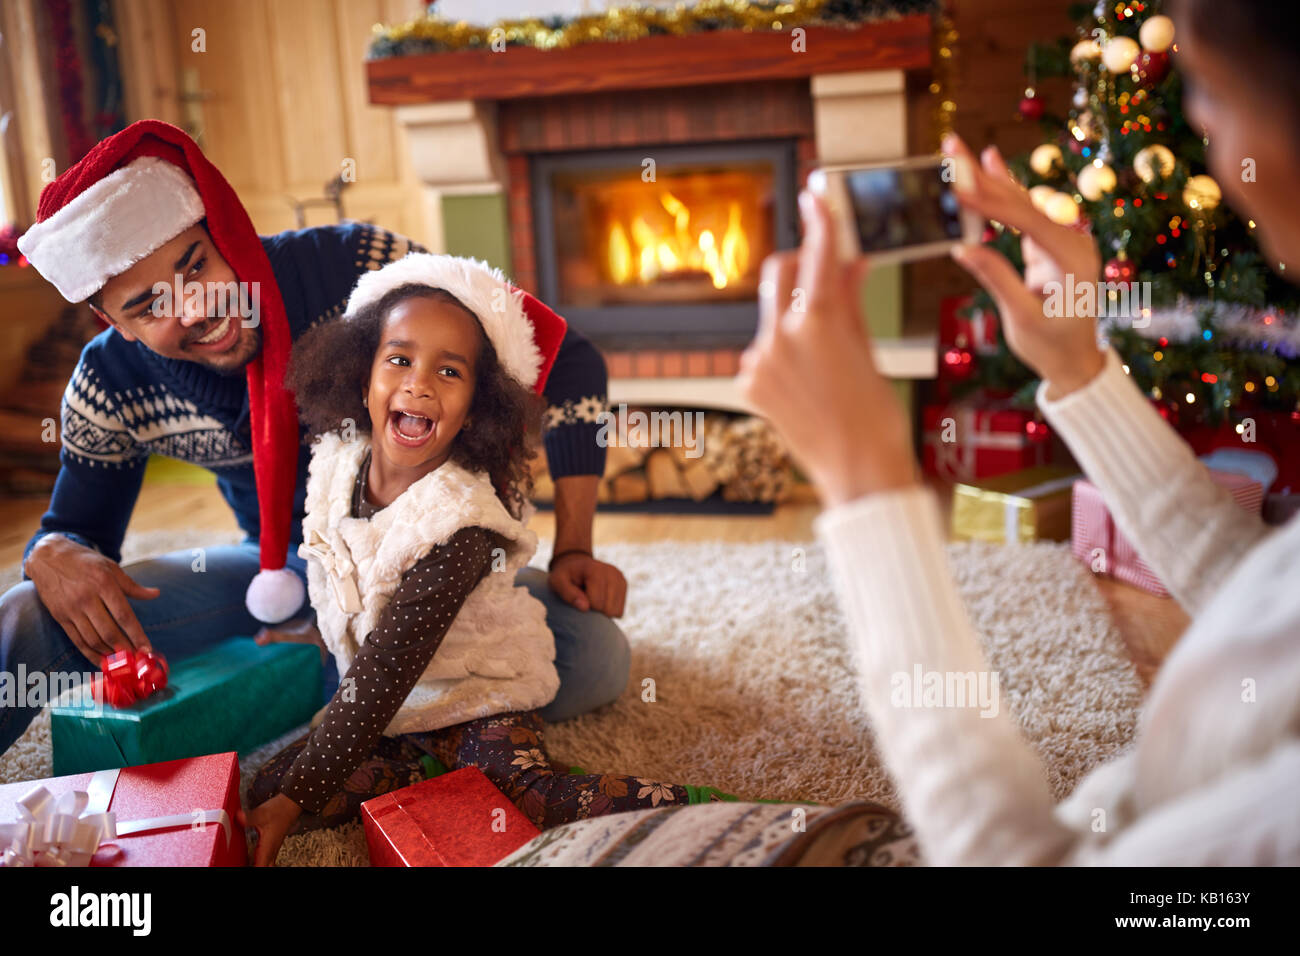 Glückliche kleine Mädchen mit Santa hat Ihre Mutter für Weihnachten Foto posiert Stockfoto